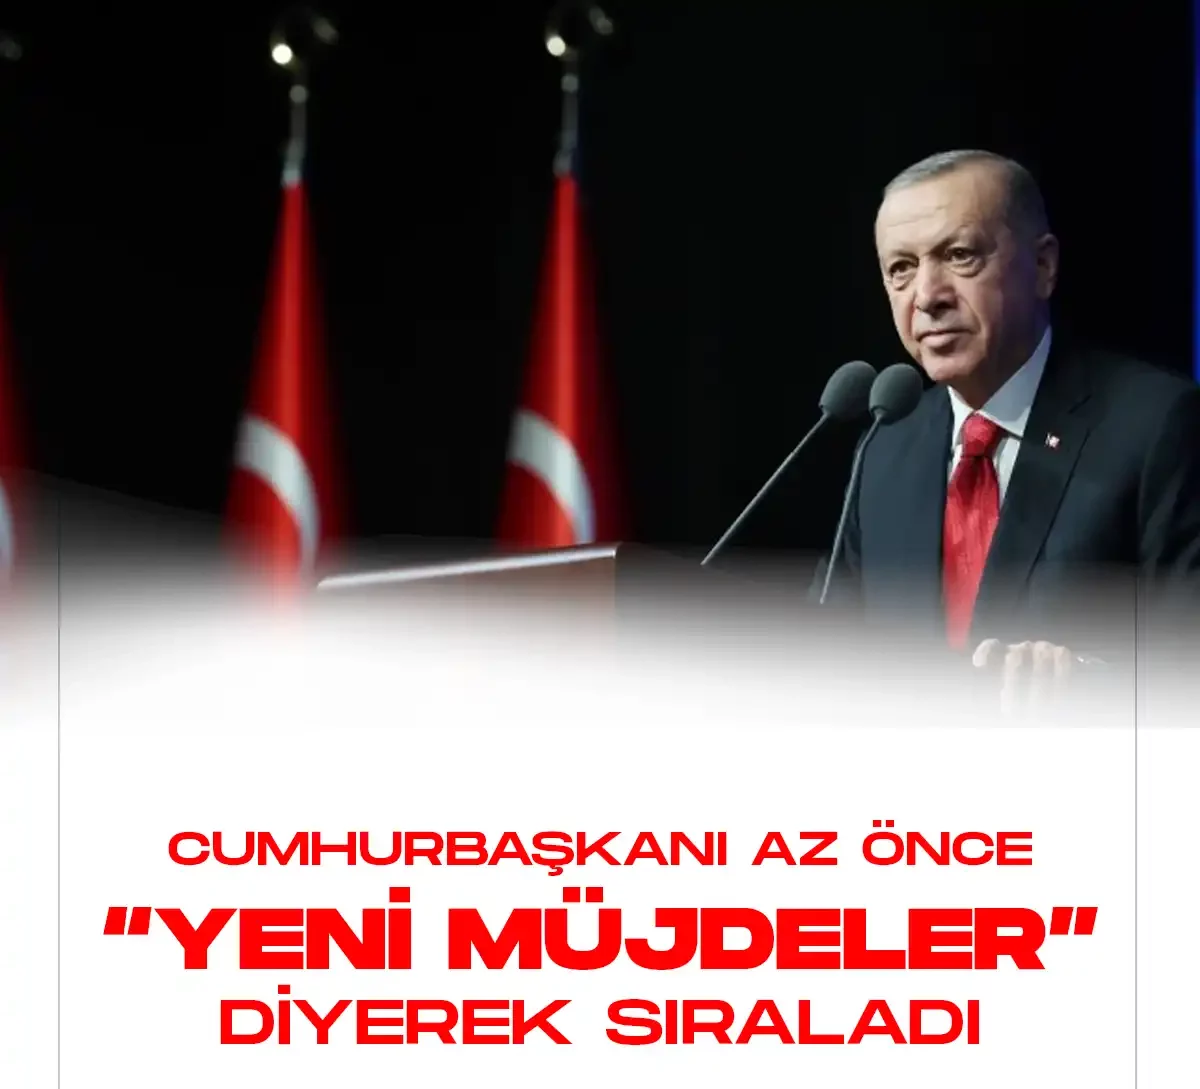 Cumhurbaşkanı Erdoğan yeni müjdeler diyerek tek tek sıraladı.